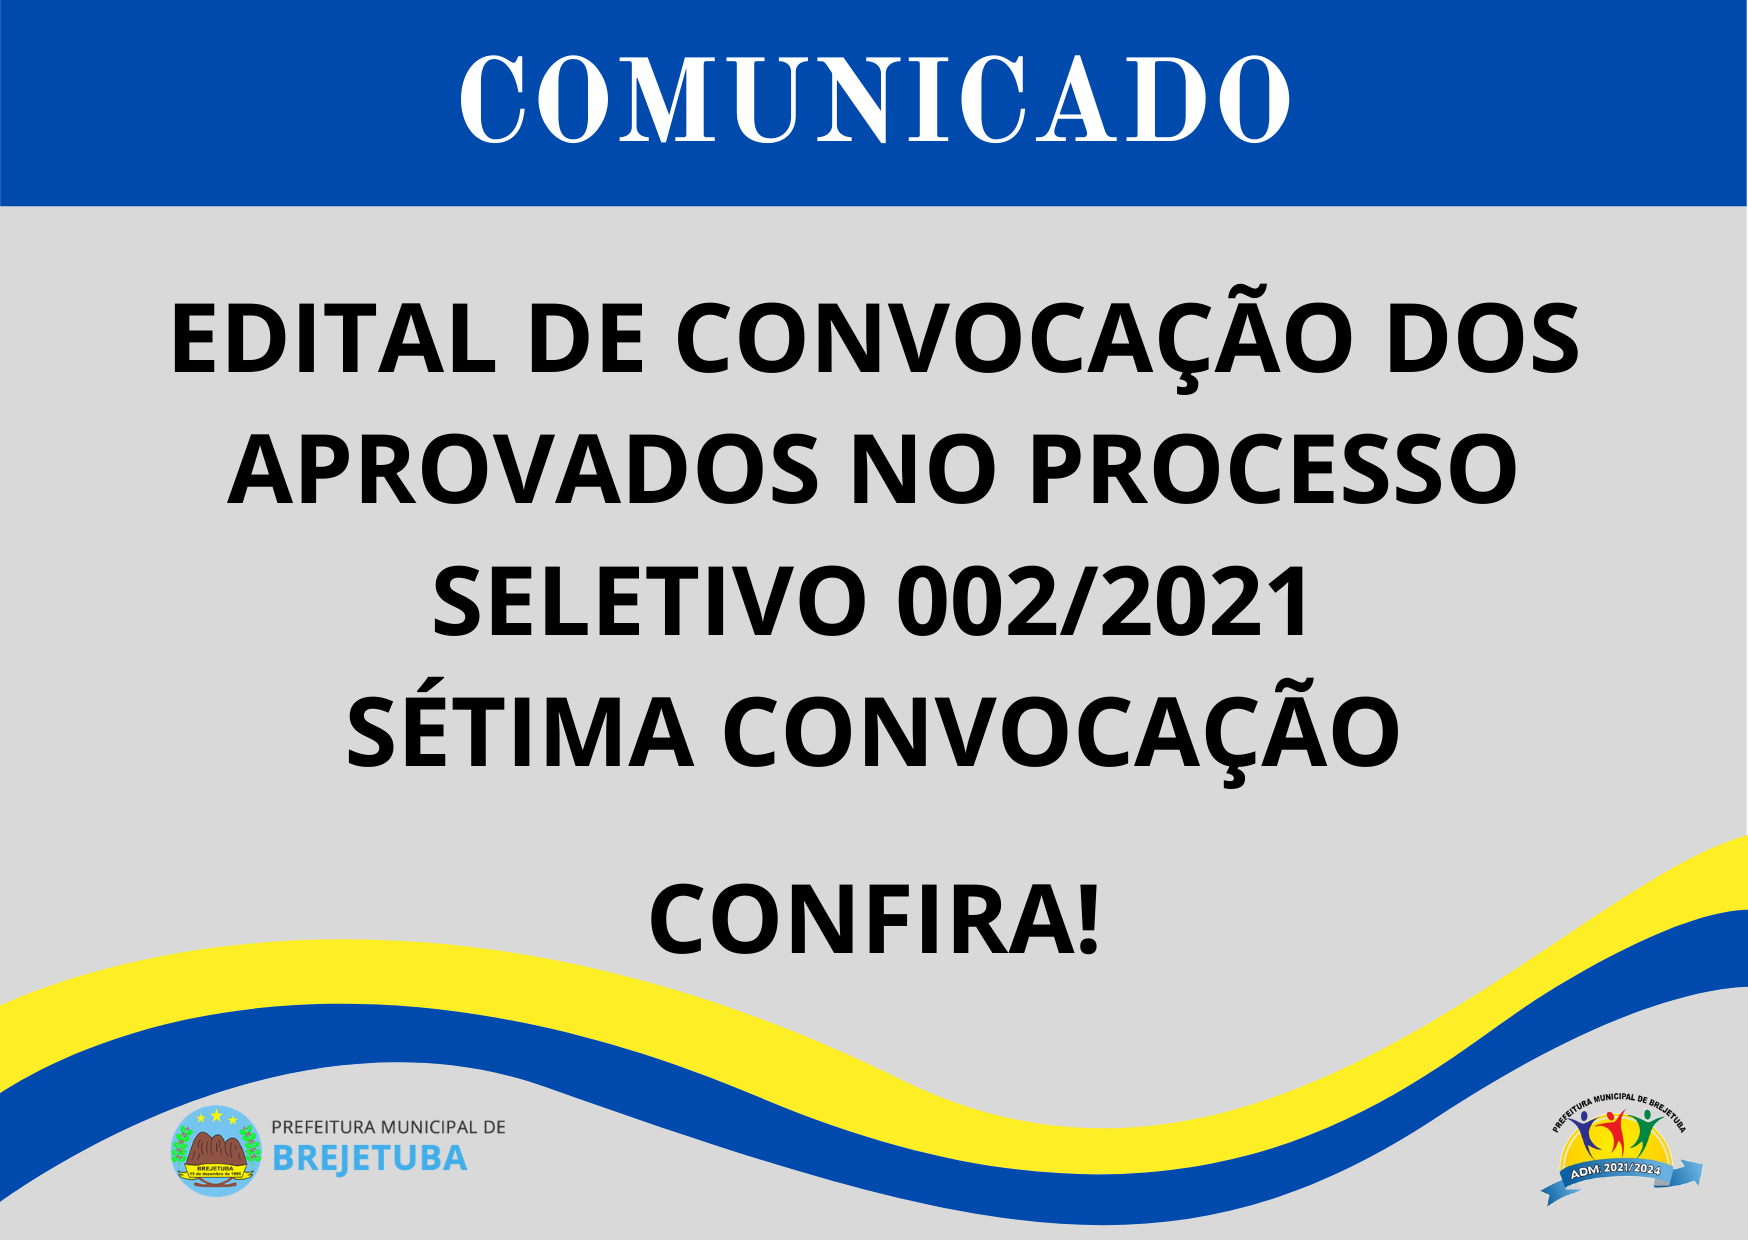 EDITAL DE CONVOCAÇÃO DOS APROVADOS NO PROCESSO SELETIVO Nº 002-2021 SETIMA CONVOCAÇÃO